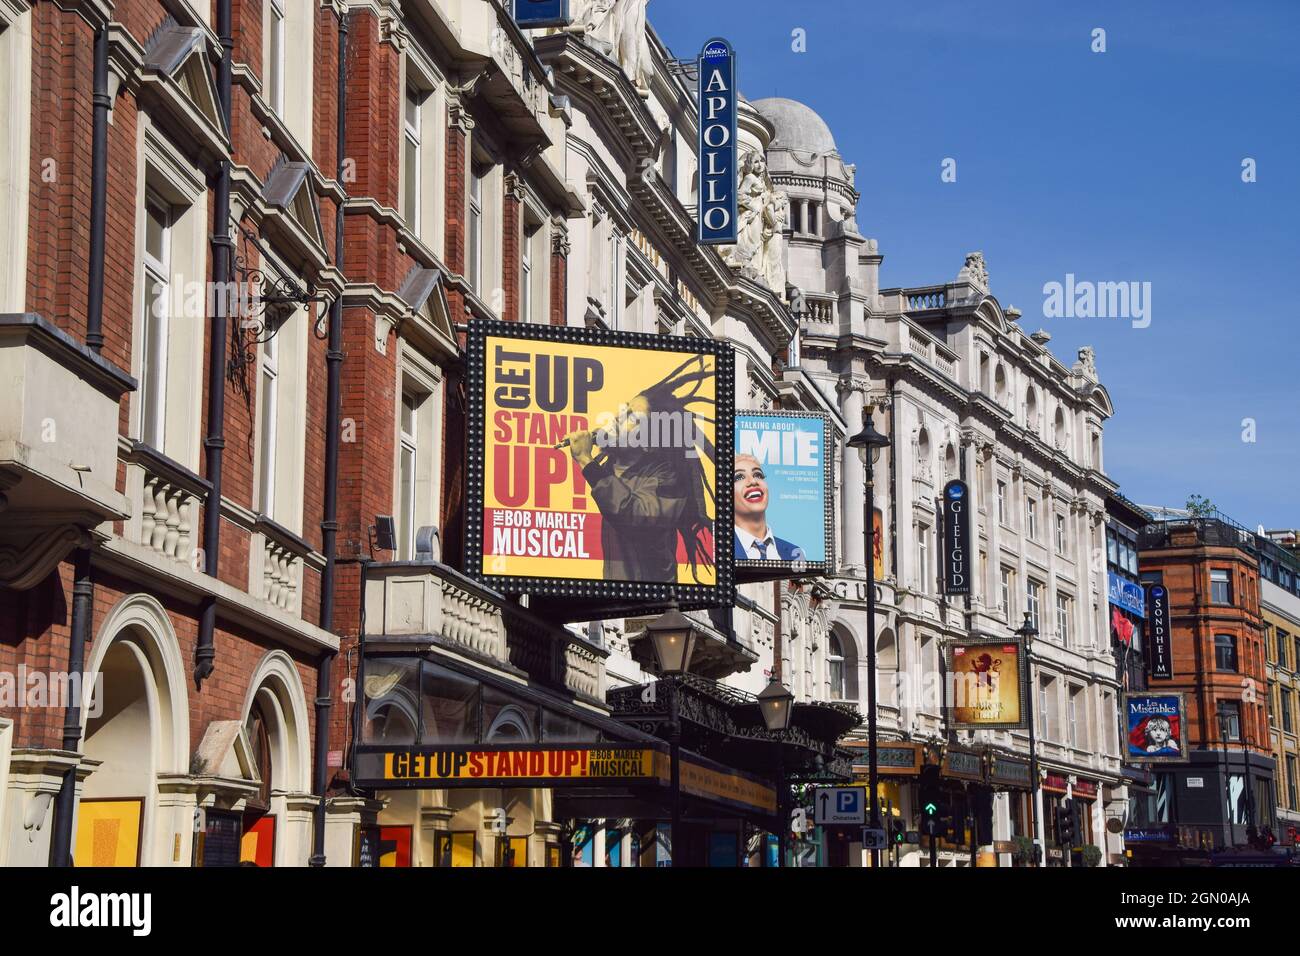 Londres, UK.21st septembre 2021. Théâtres sur Shaftesbury Avenue, West End, vue de jour. Crédit : Vuk Valcic/Alamy Banque D'Images